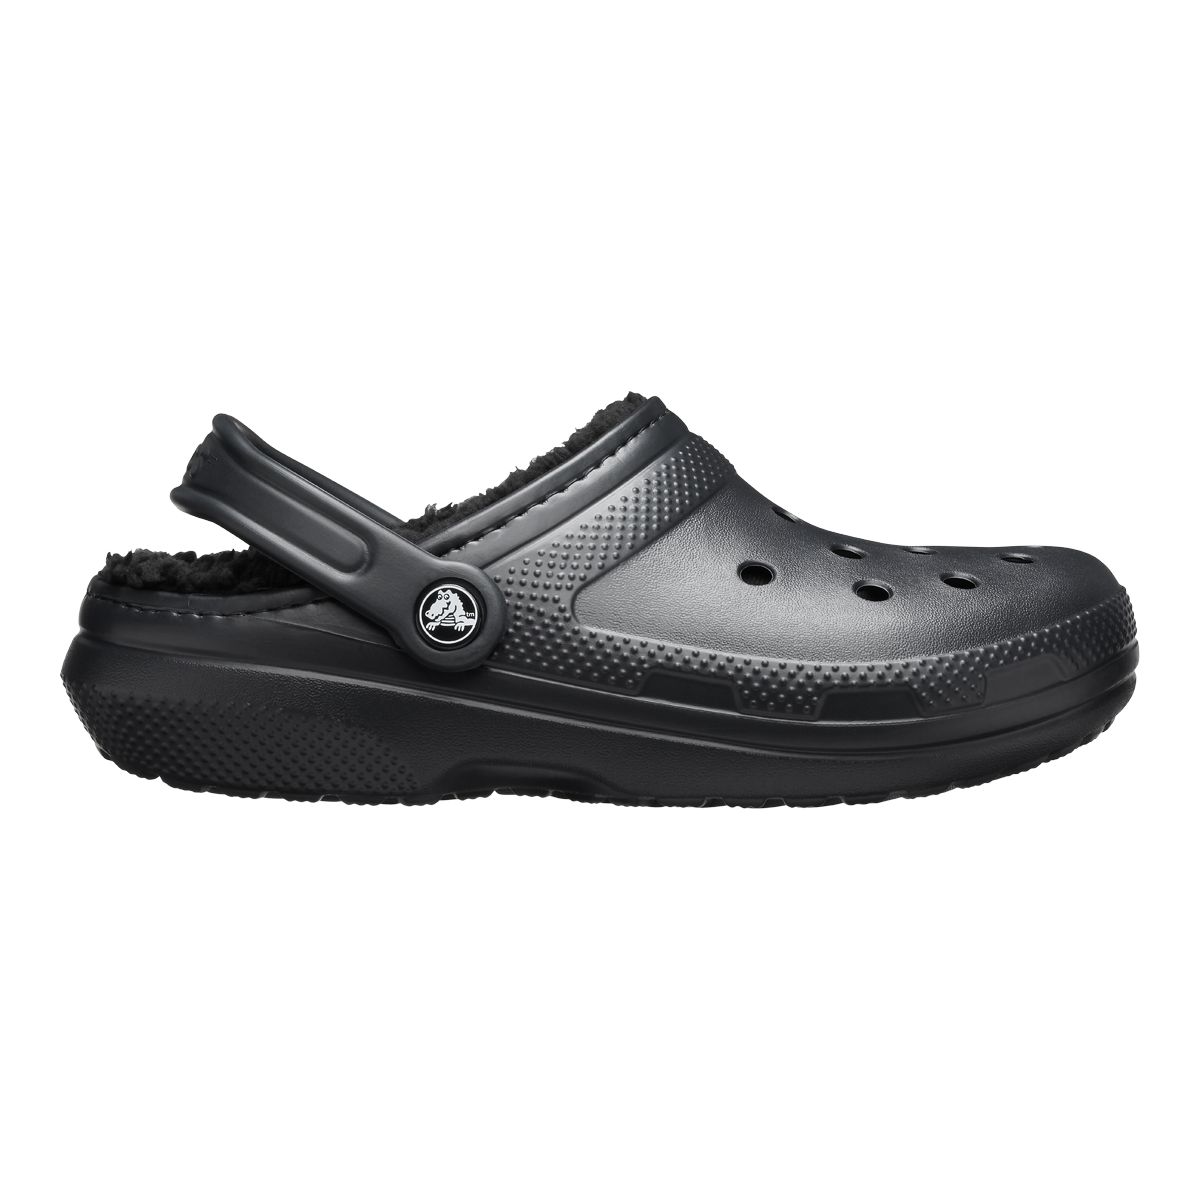 Crocs Men's Classic Lined Clog Sandals